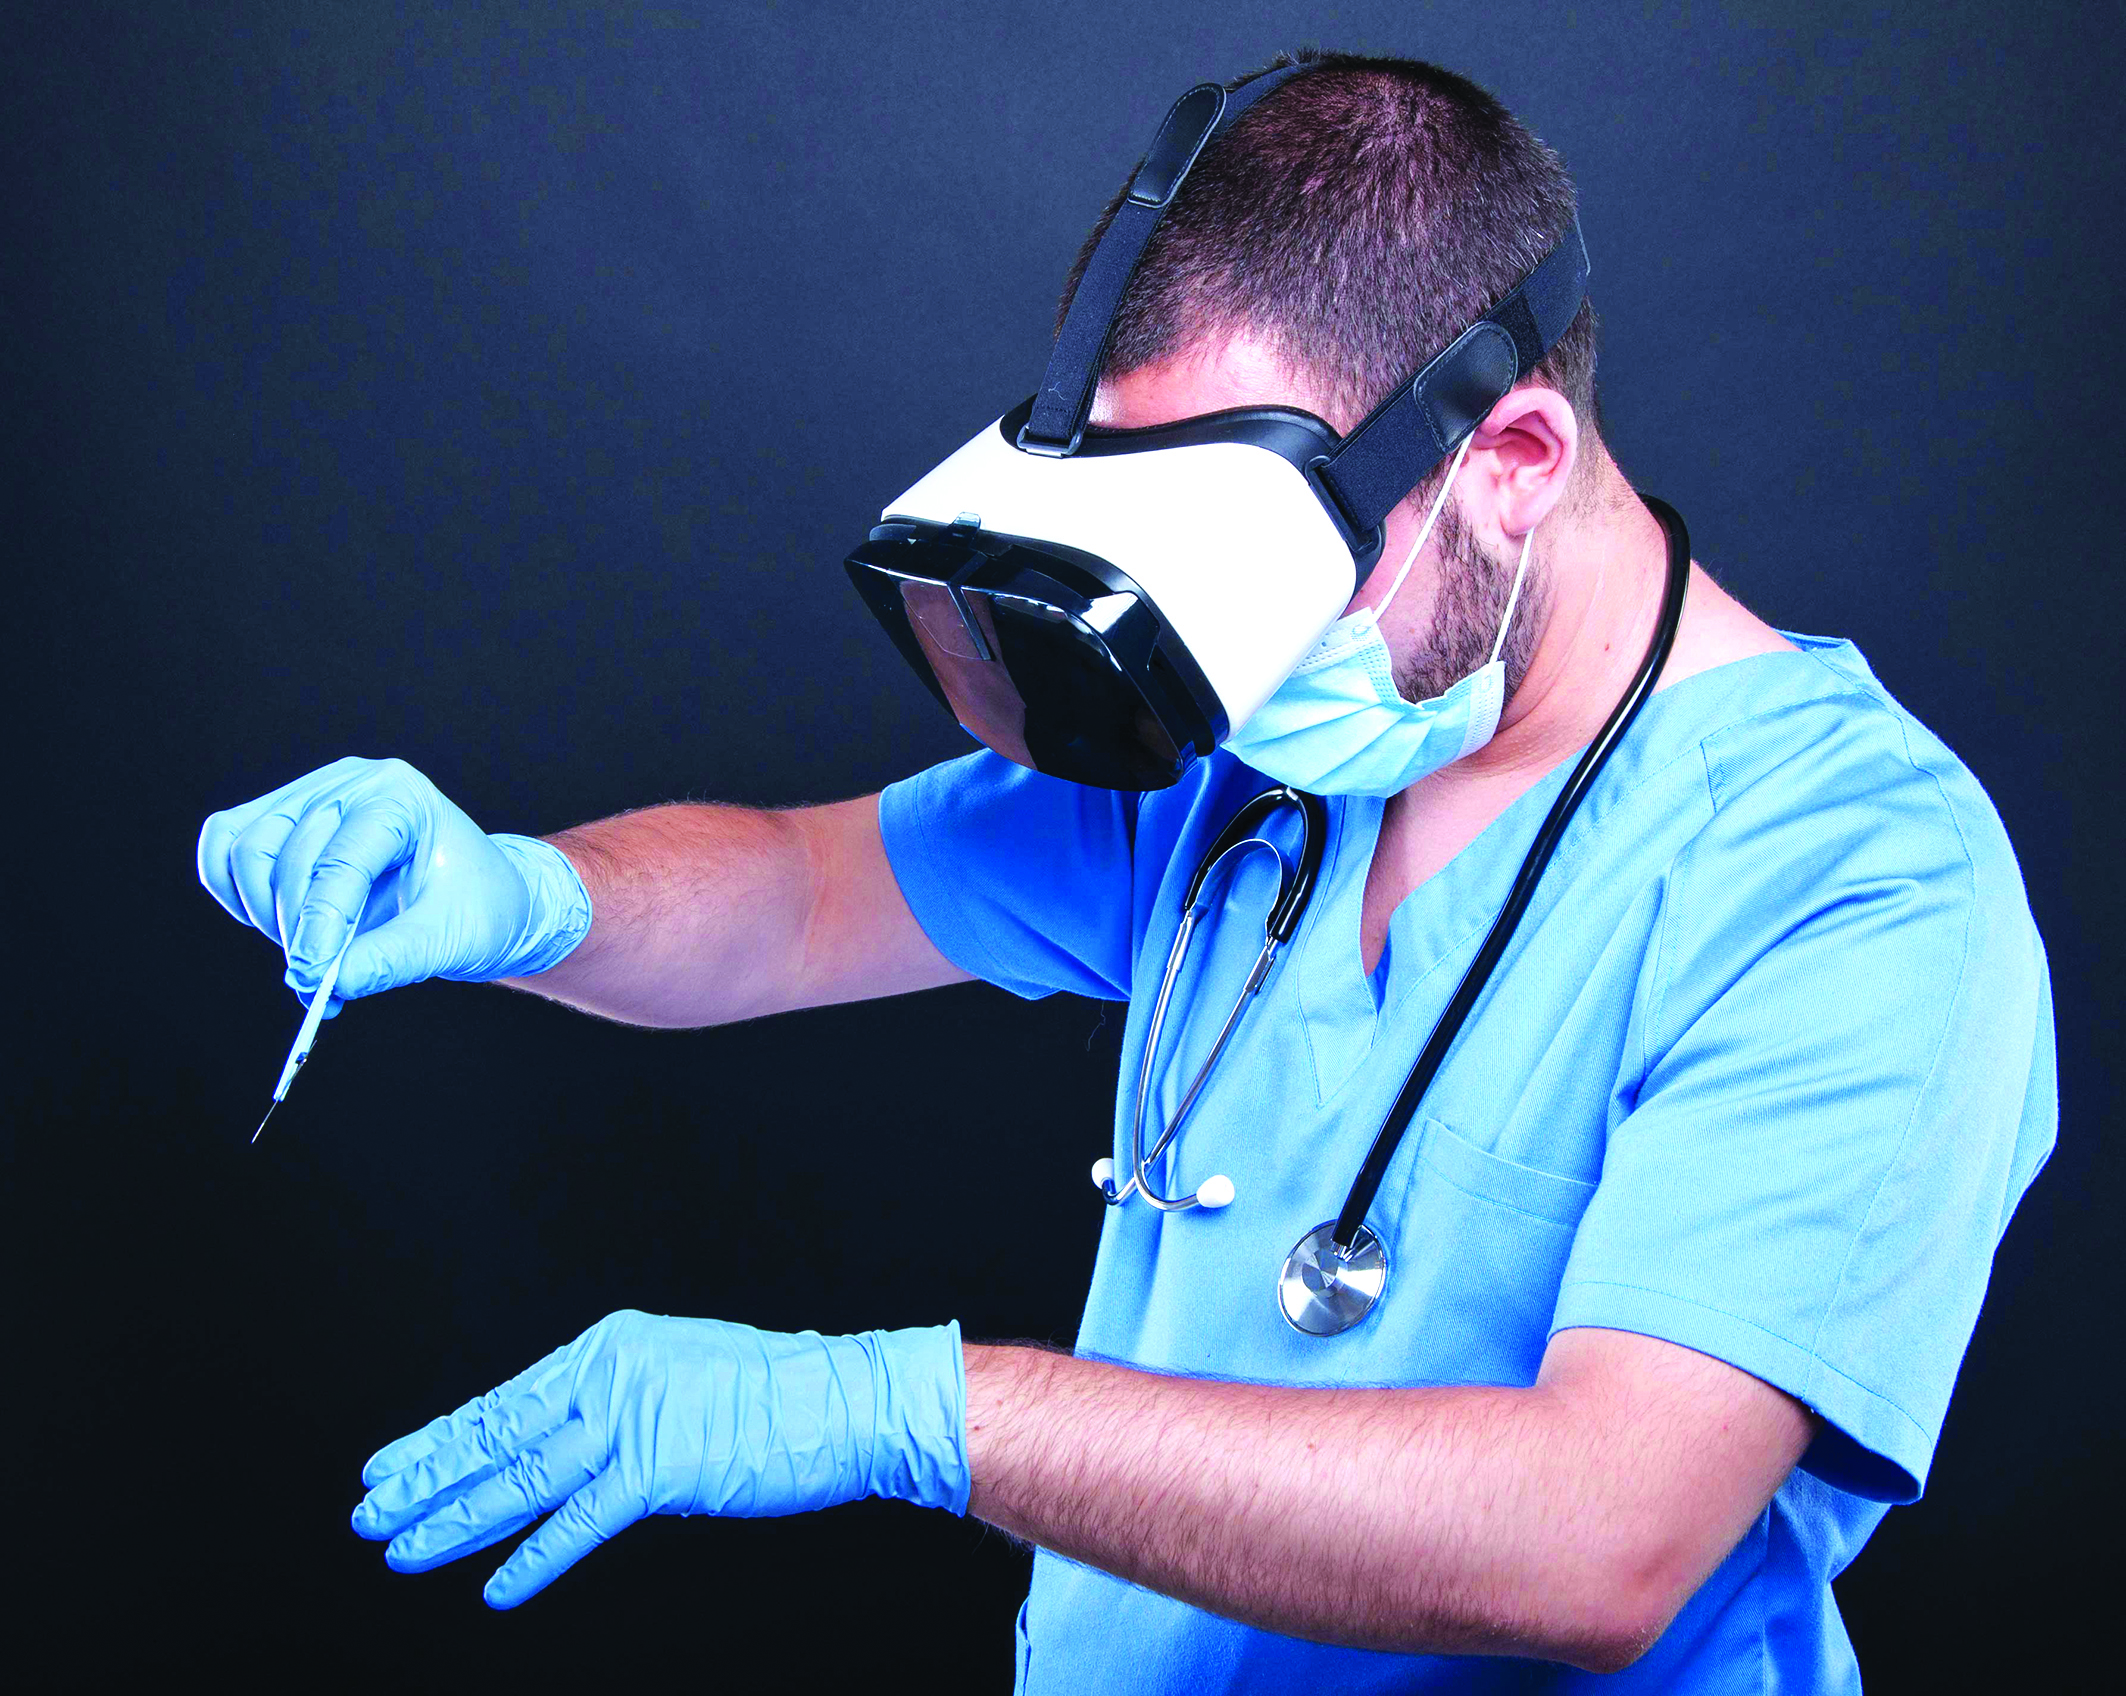 Các bác sĩ sẽ tiến hành phẫu thuật nhanh hơn và chính xác hơn nếu được luyện tập với công nghệ thực tế ảo. Nguồn: dailymail.co.uk